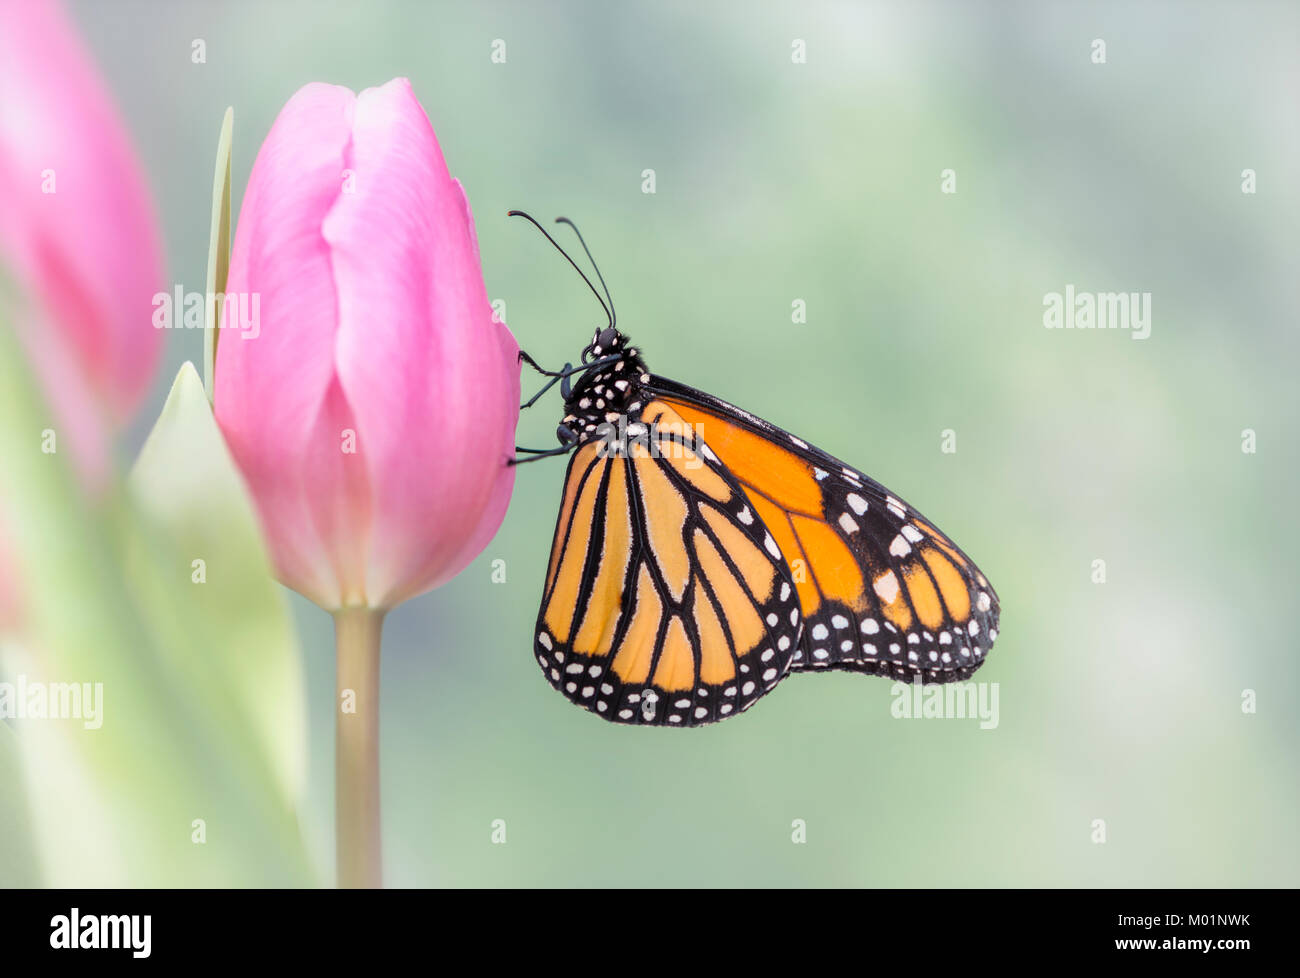 Monarchfalter Danaus Plexippus mit geschlossenen Flügeln, ruht auf einem rosa Tulpe mit einem weichen, grünen Hintergrund - Seitenansicht Stockfoto